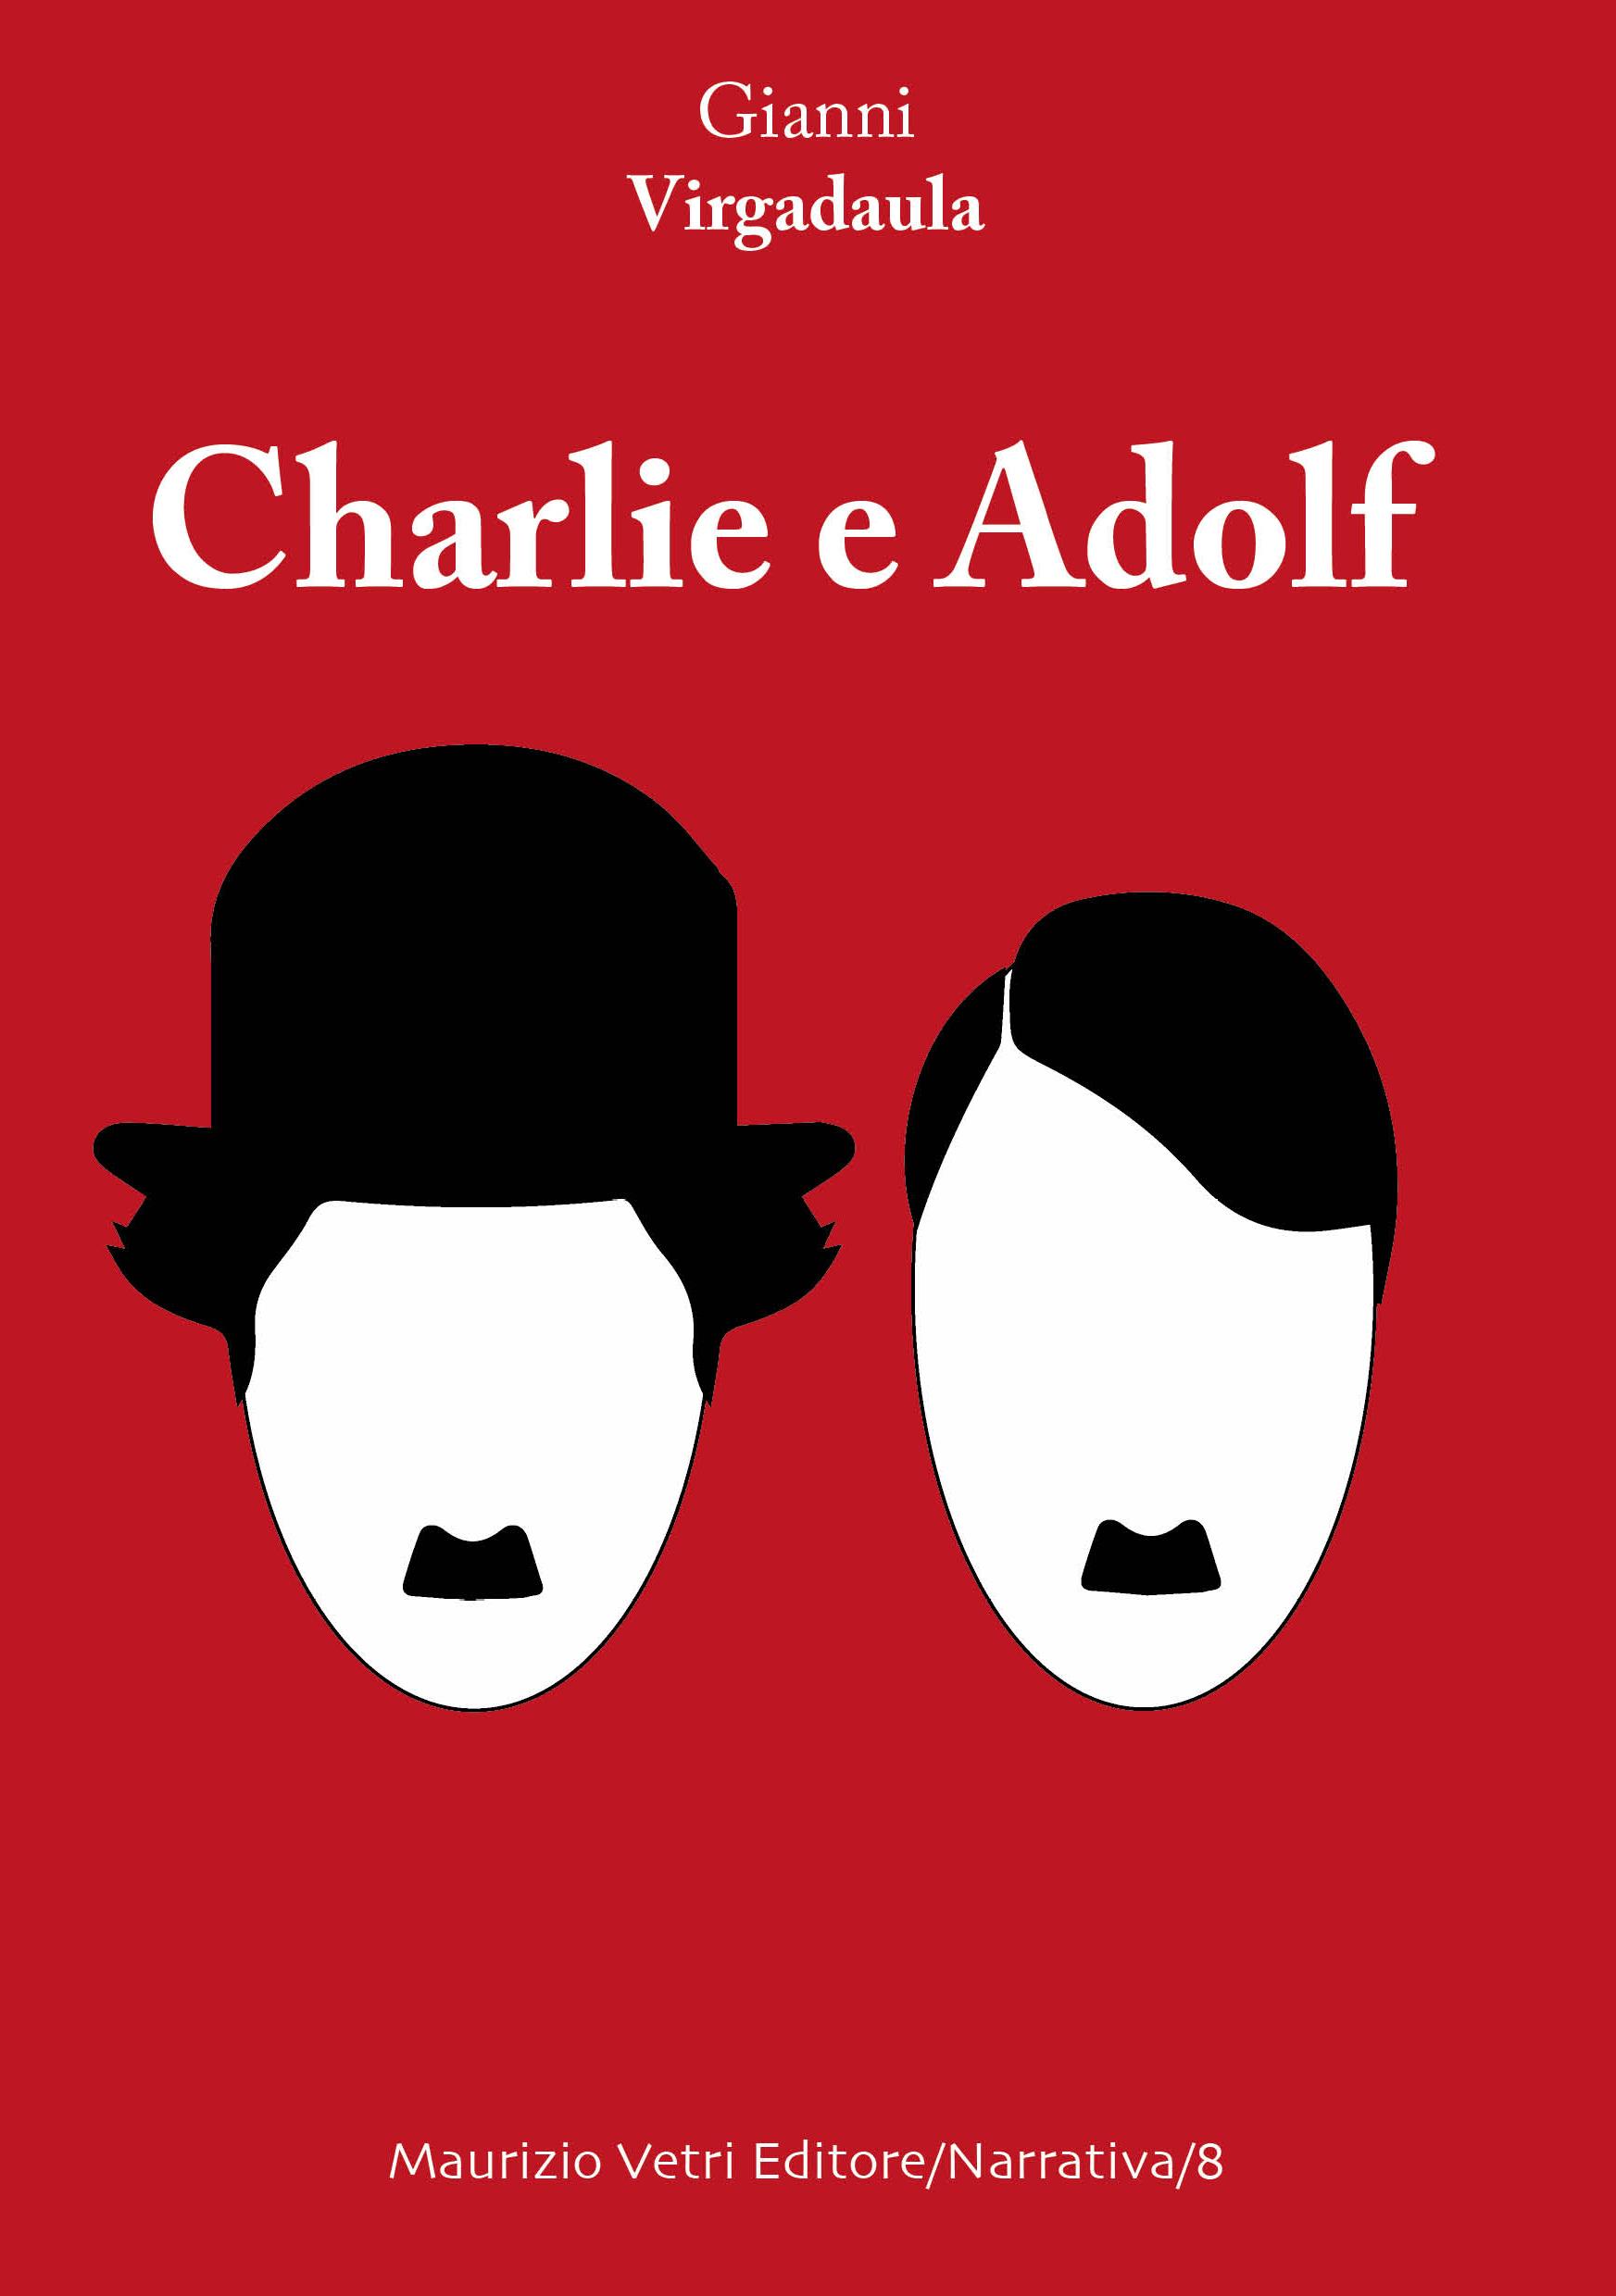 Charliie e Adolf